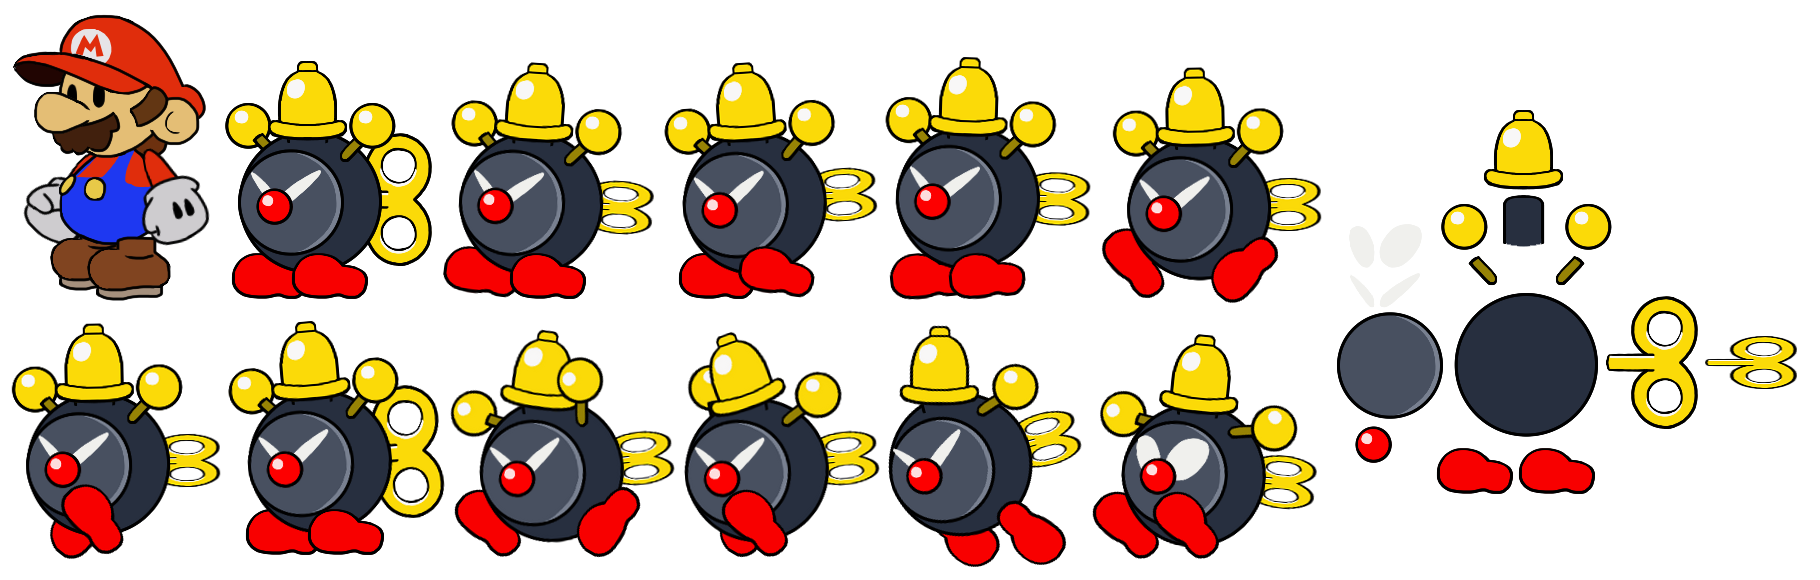 Mario & Luigi Customs - Alarm Bob-omb (Paper Mario-Style)